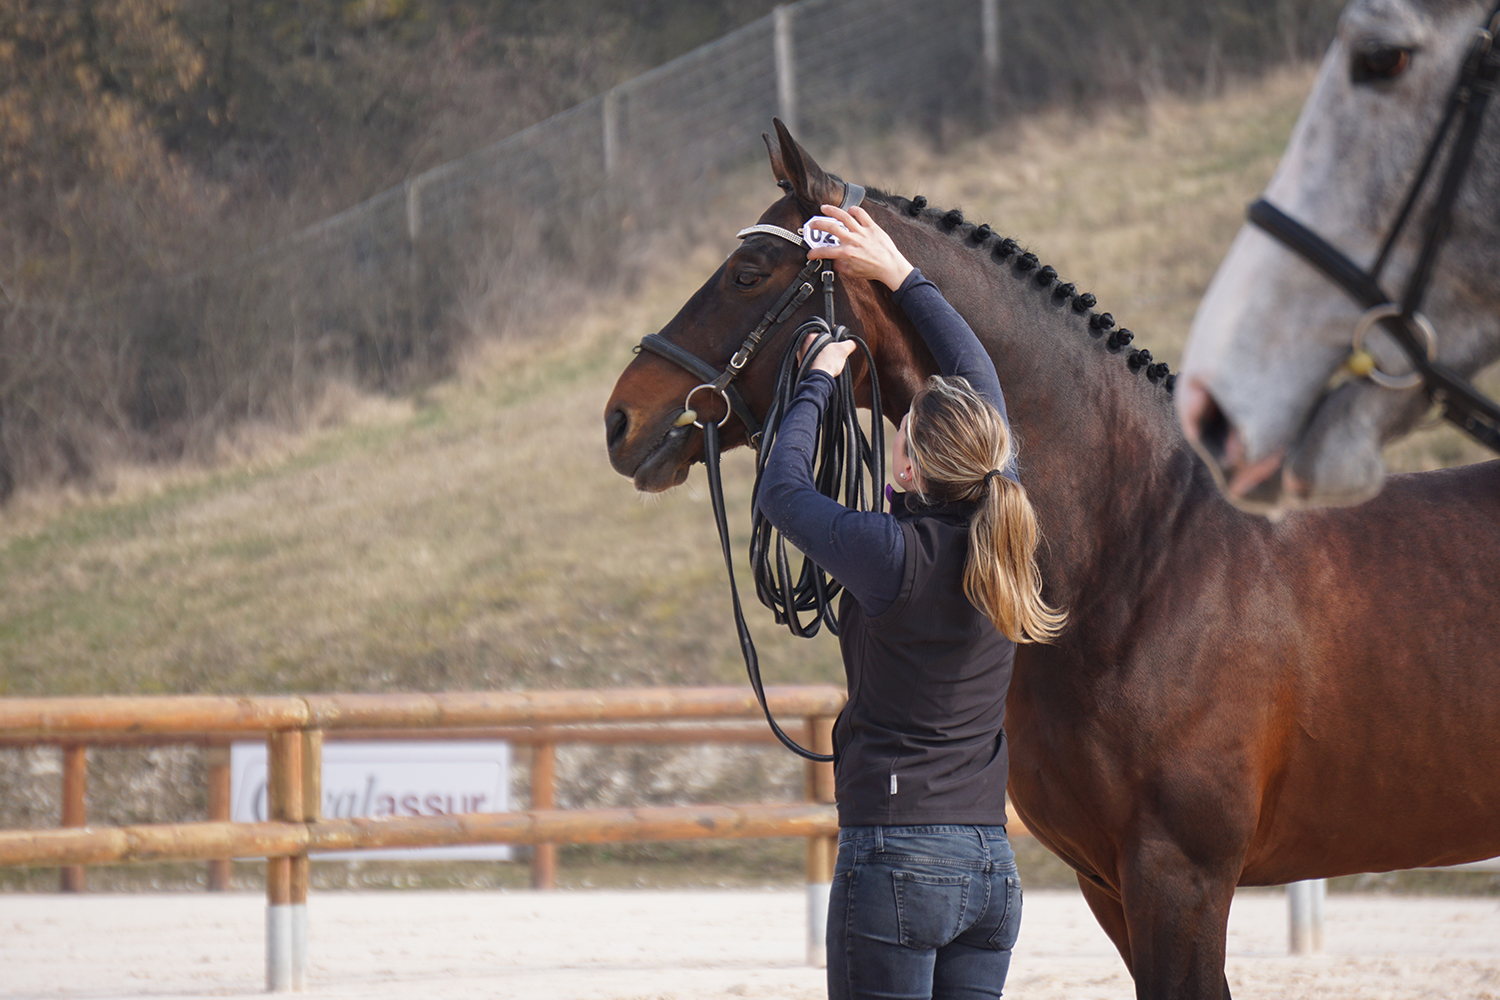 Photographie prise par Horse Development lors d'un rassemblement d'élevage, présentation d'un étalon de sport, CSO Dressage